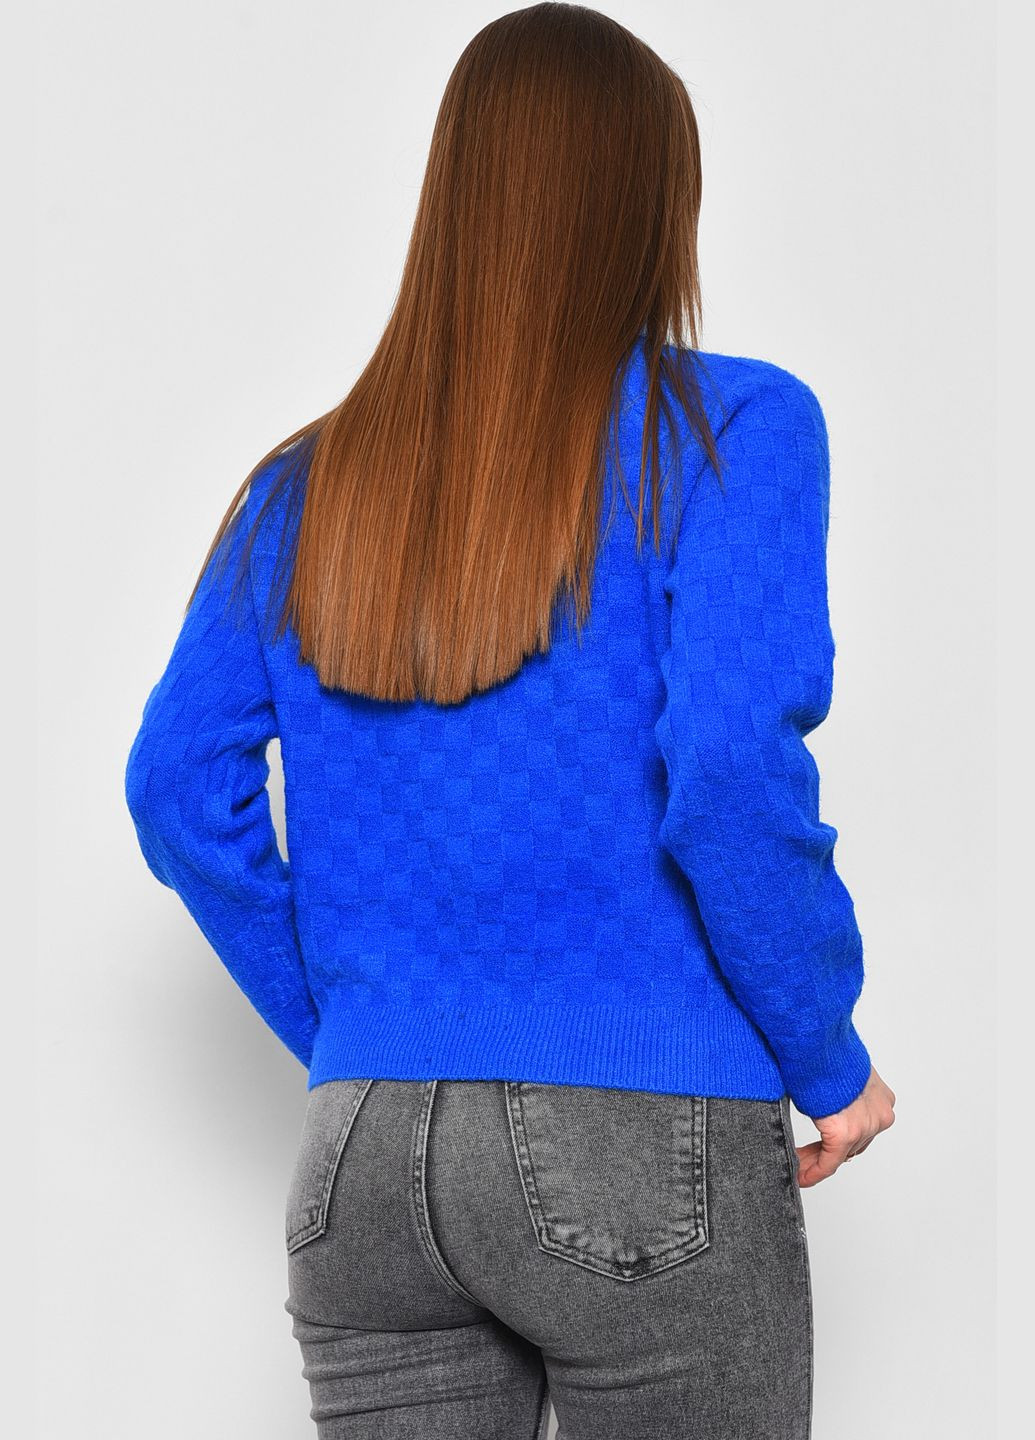 Синій зимовий светр жіночий синього кольору пуловер Let's Shop